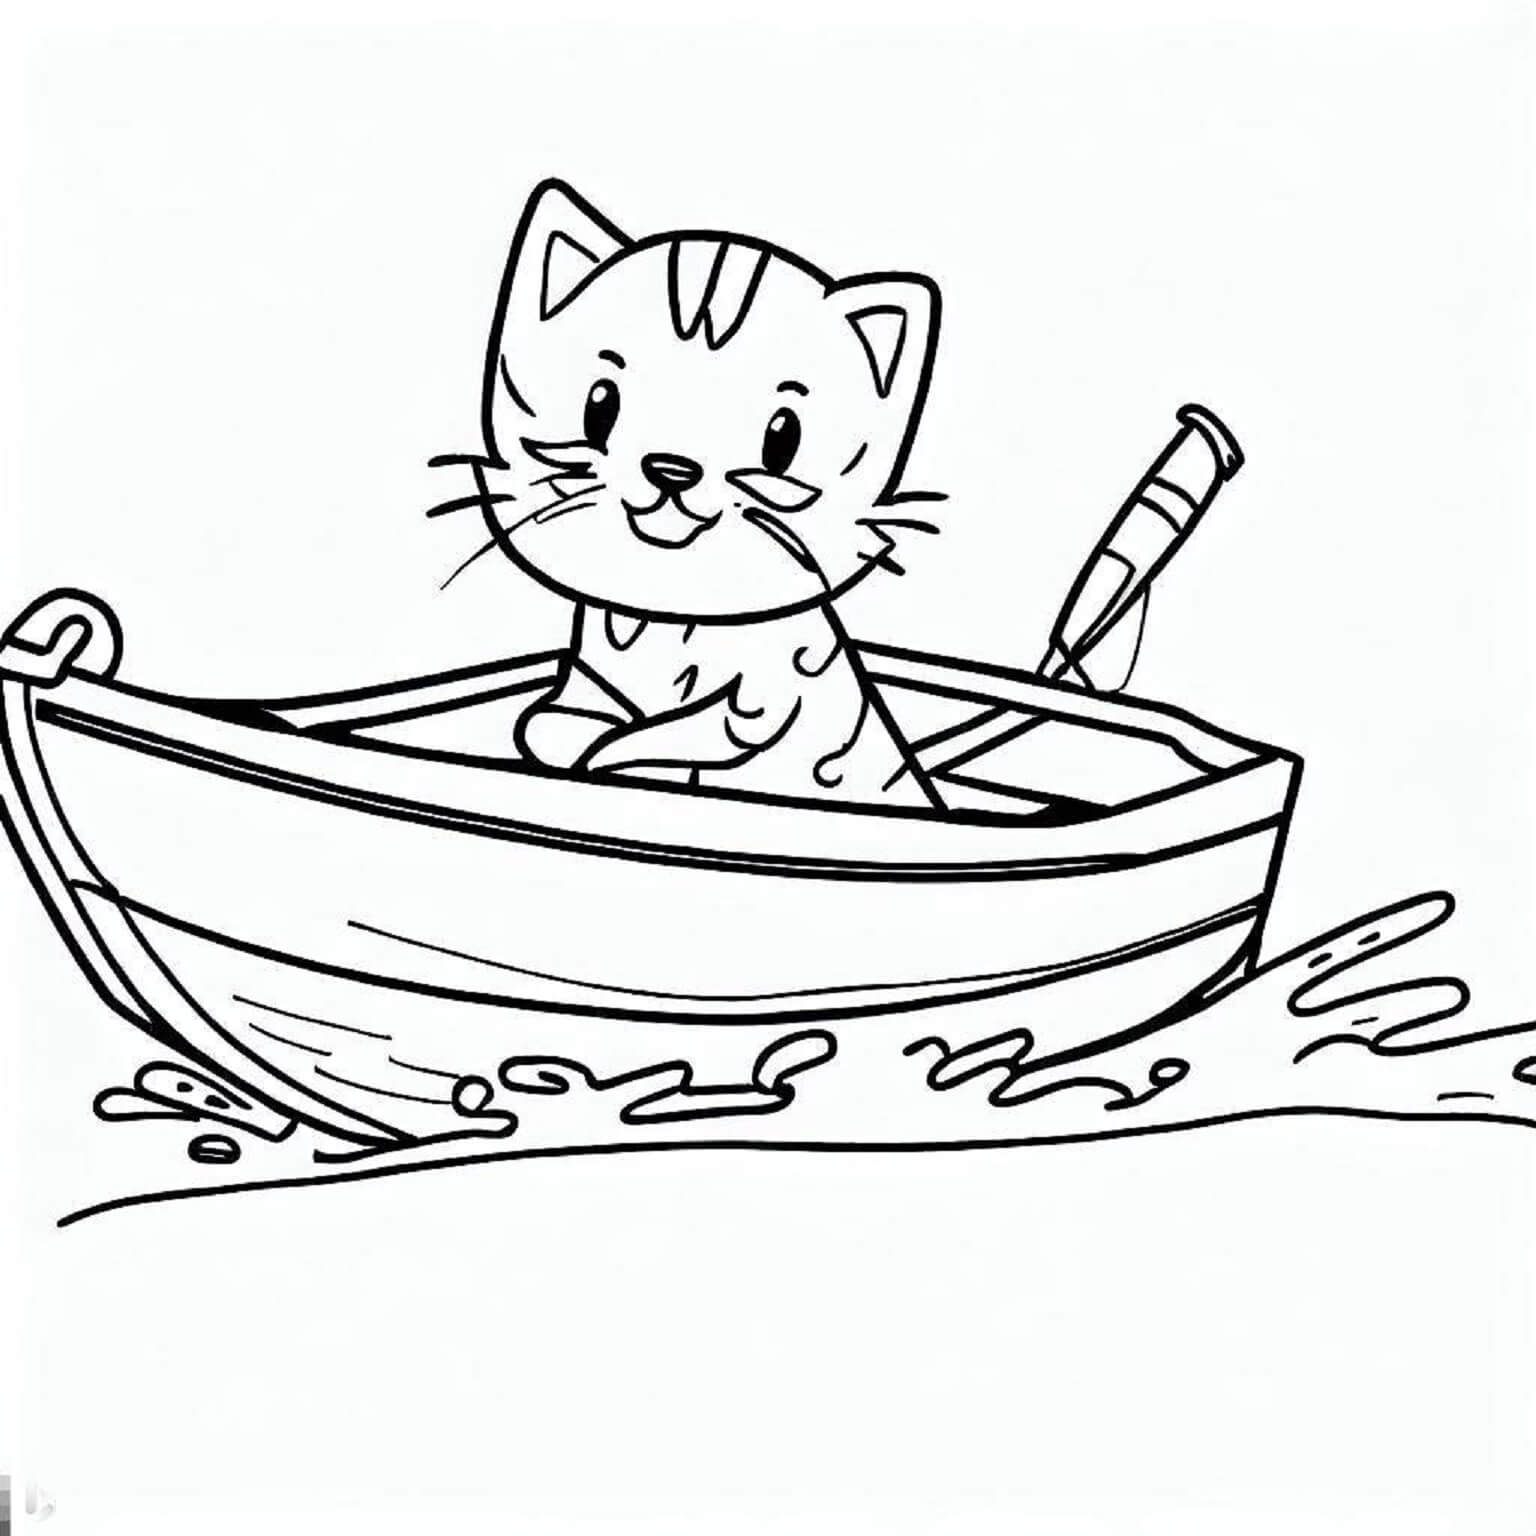 Gato Engraçado No Barco De Gato para colorir